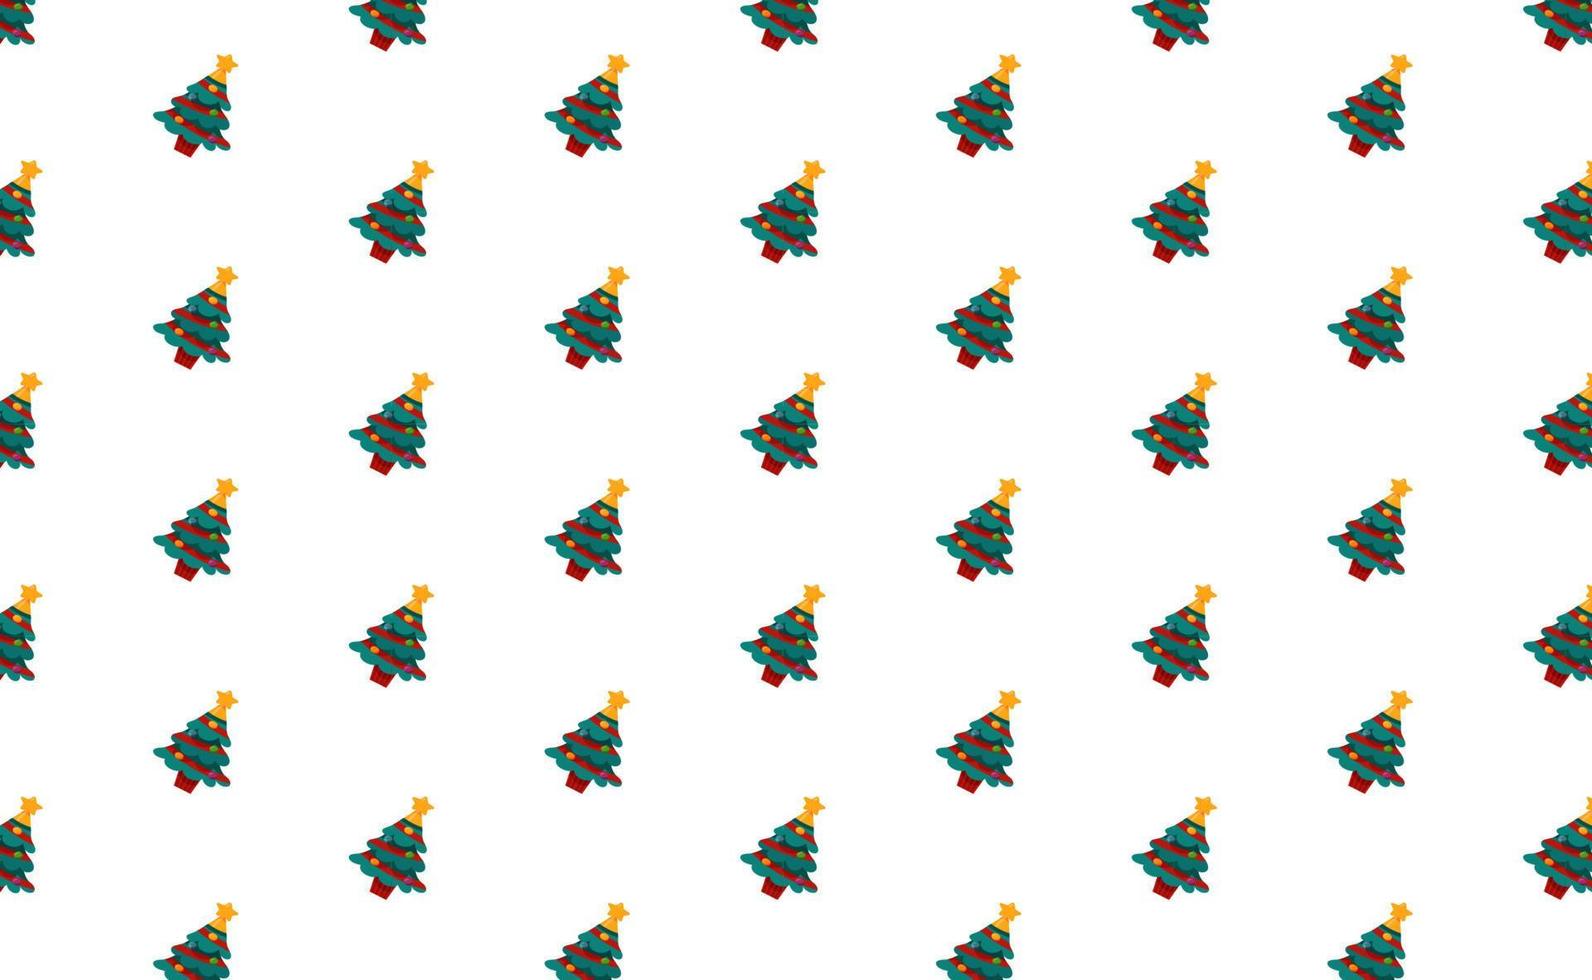 Baummuster-Hintergrundillustration mit Thema der frohen Weihnachten vektor